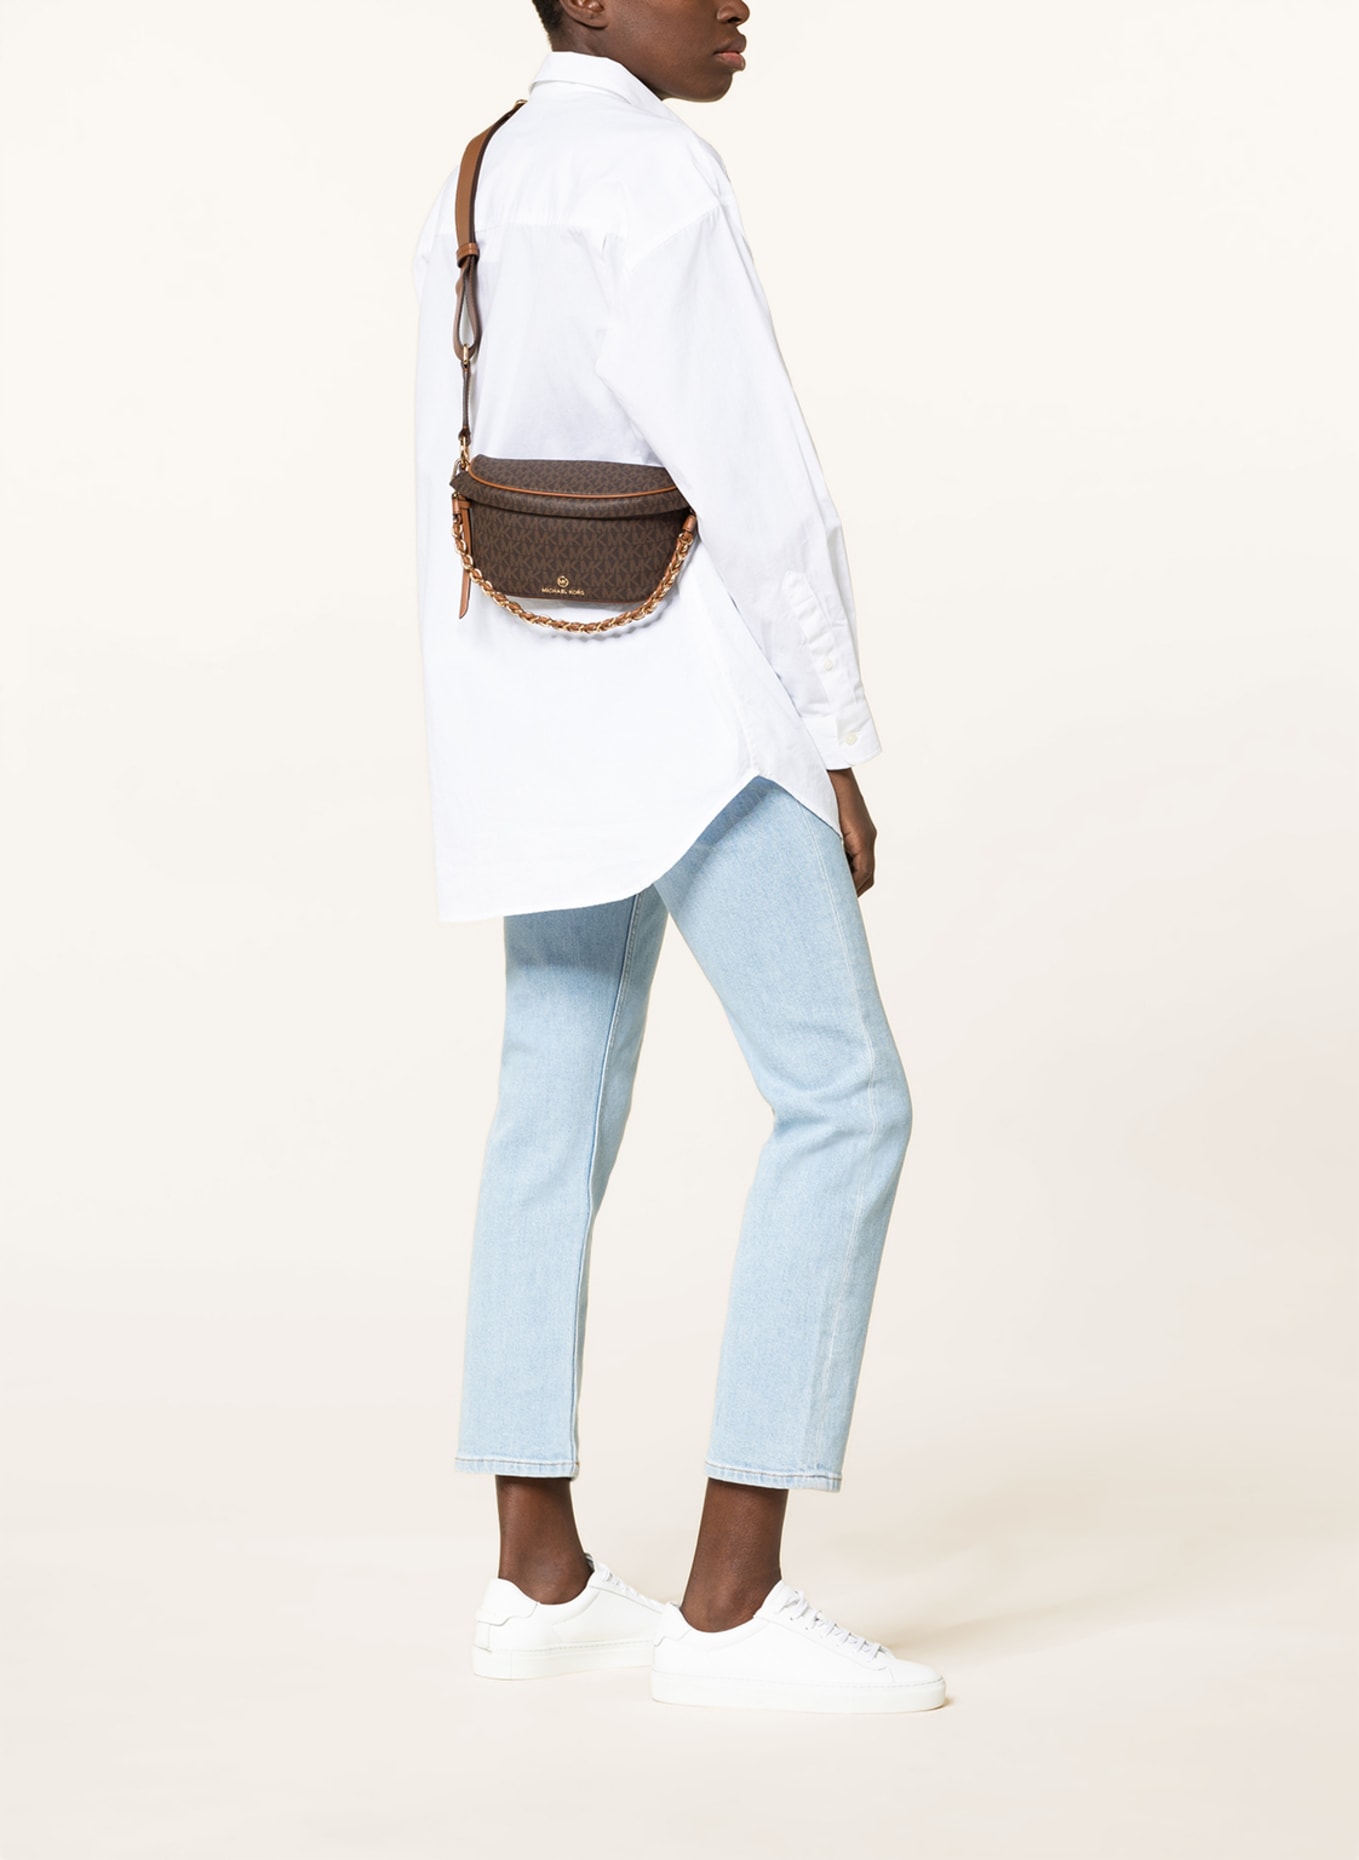 MICHAEL KORS Shoulder bag SLATER SMALL, Color: 252 BRN/ACORN (Image 4)